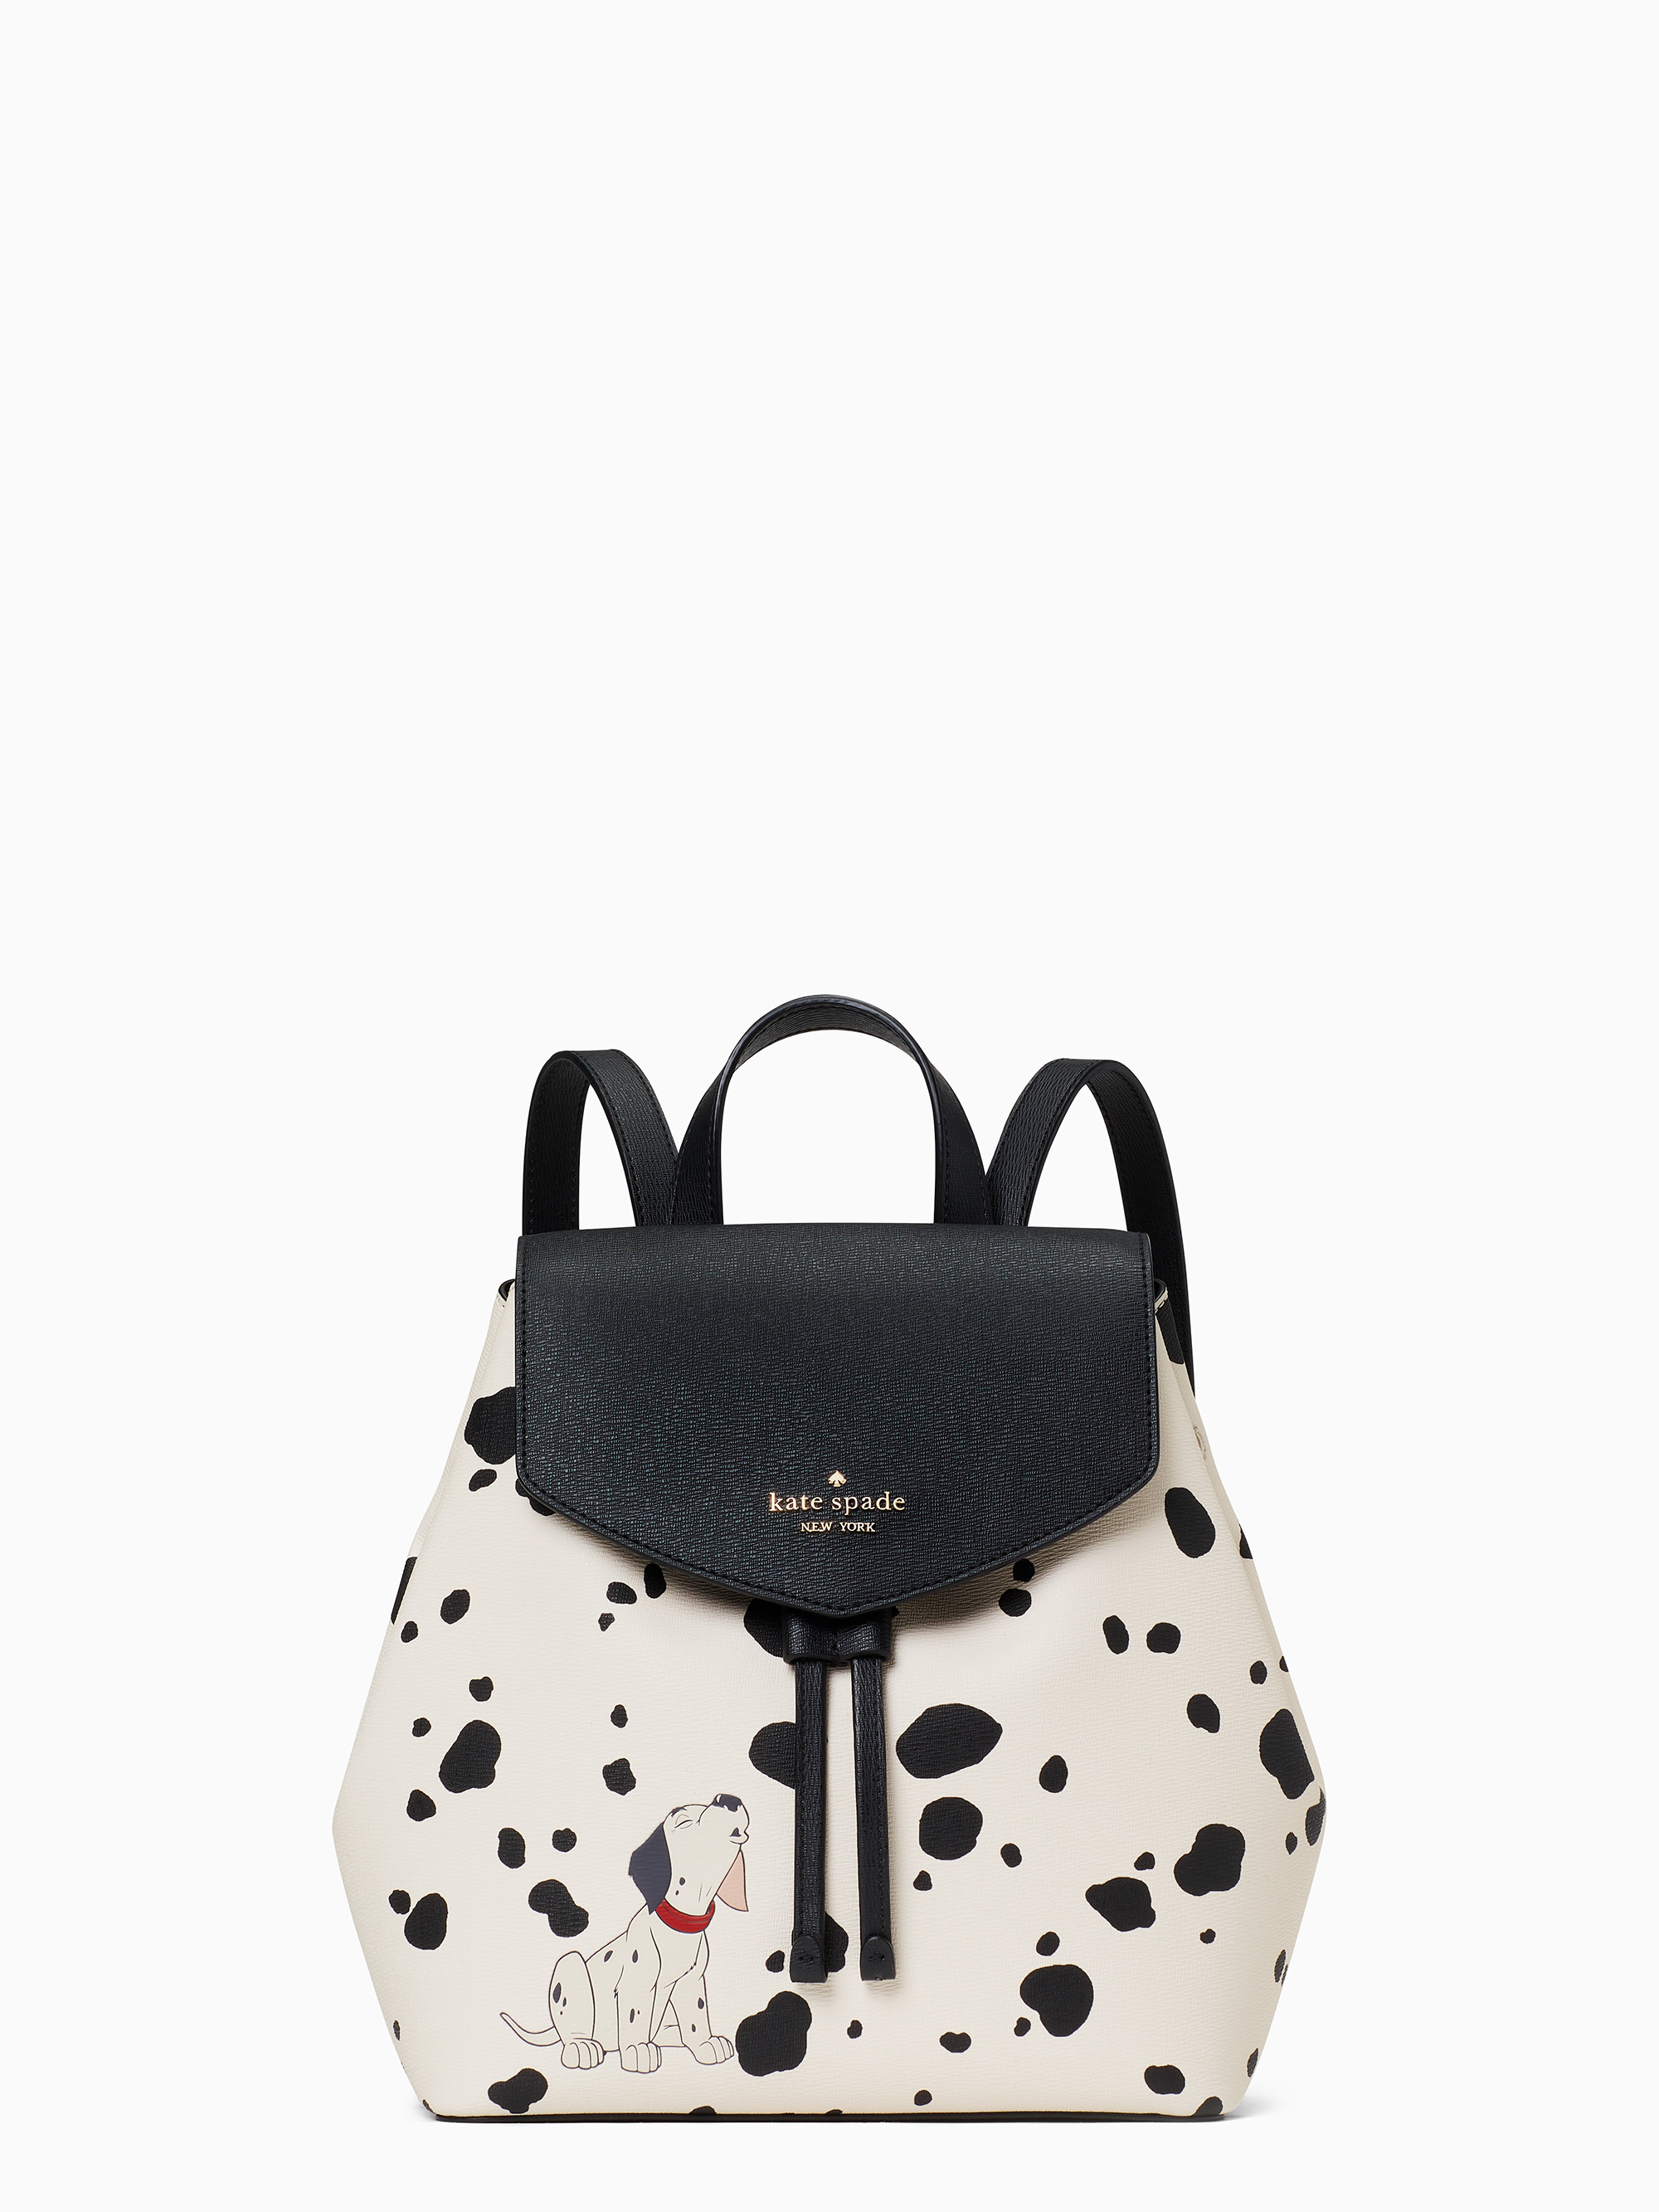 Disney X Kate Spade New York Medium Flap 101 Dalmatians Backpack